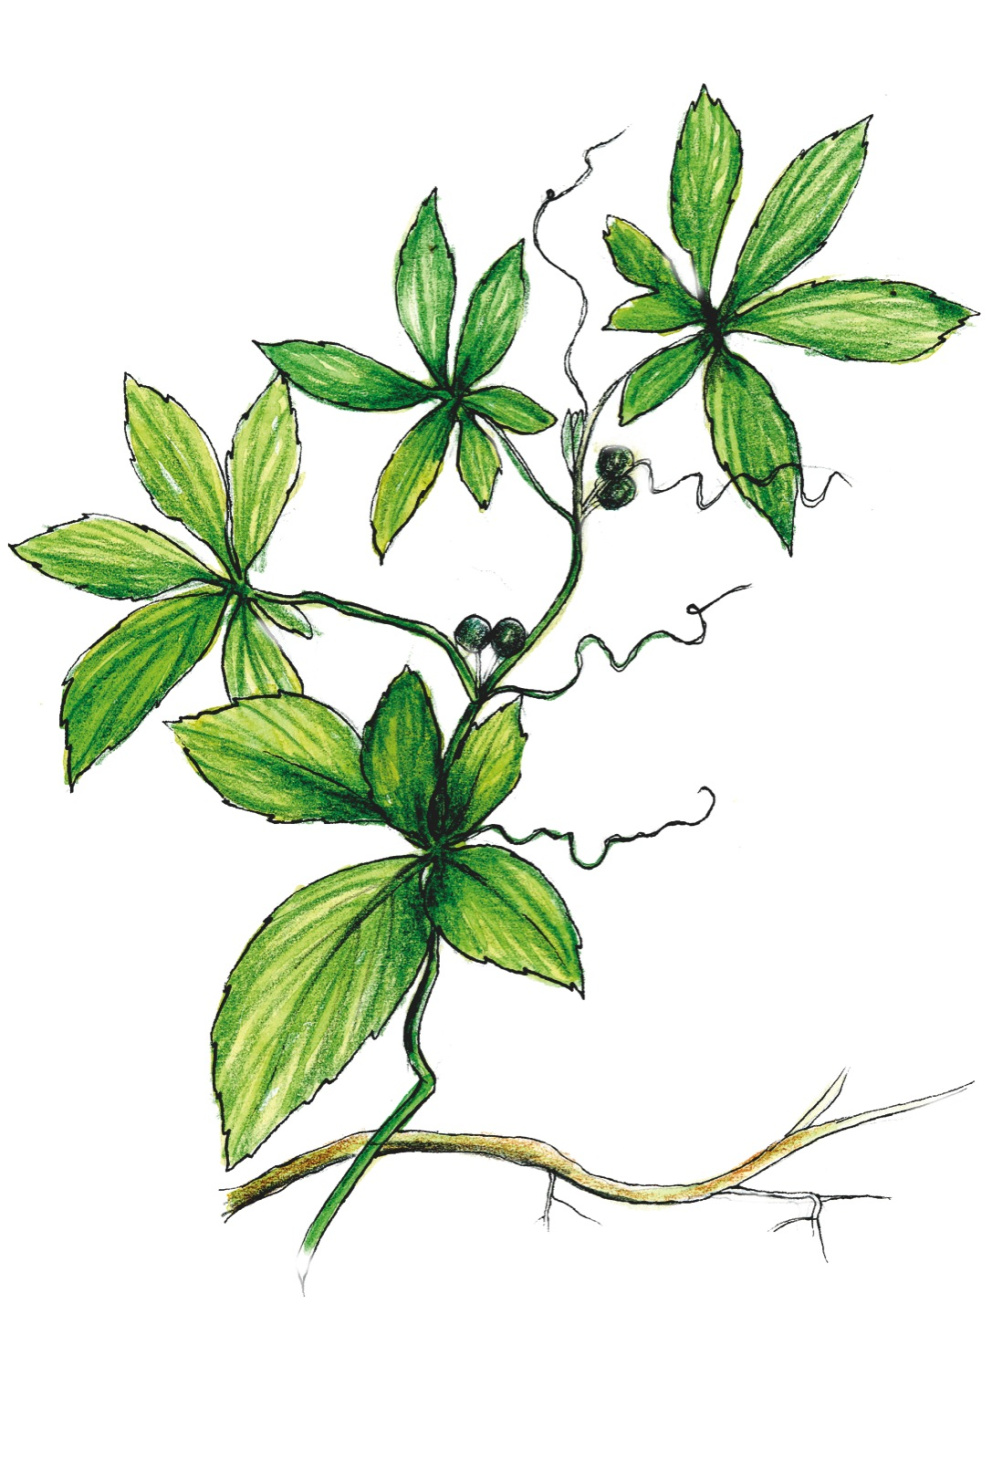 Gynostema pětilistá, Gynostemma pentaphyllum